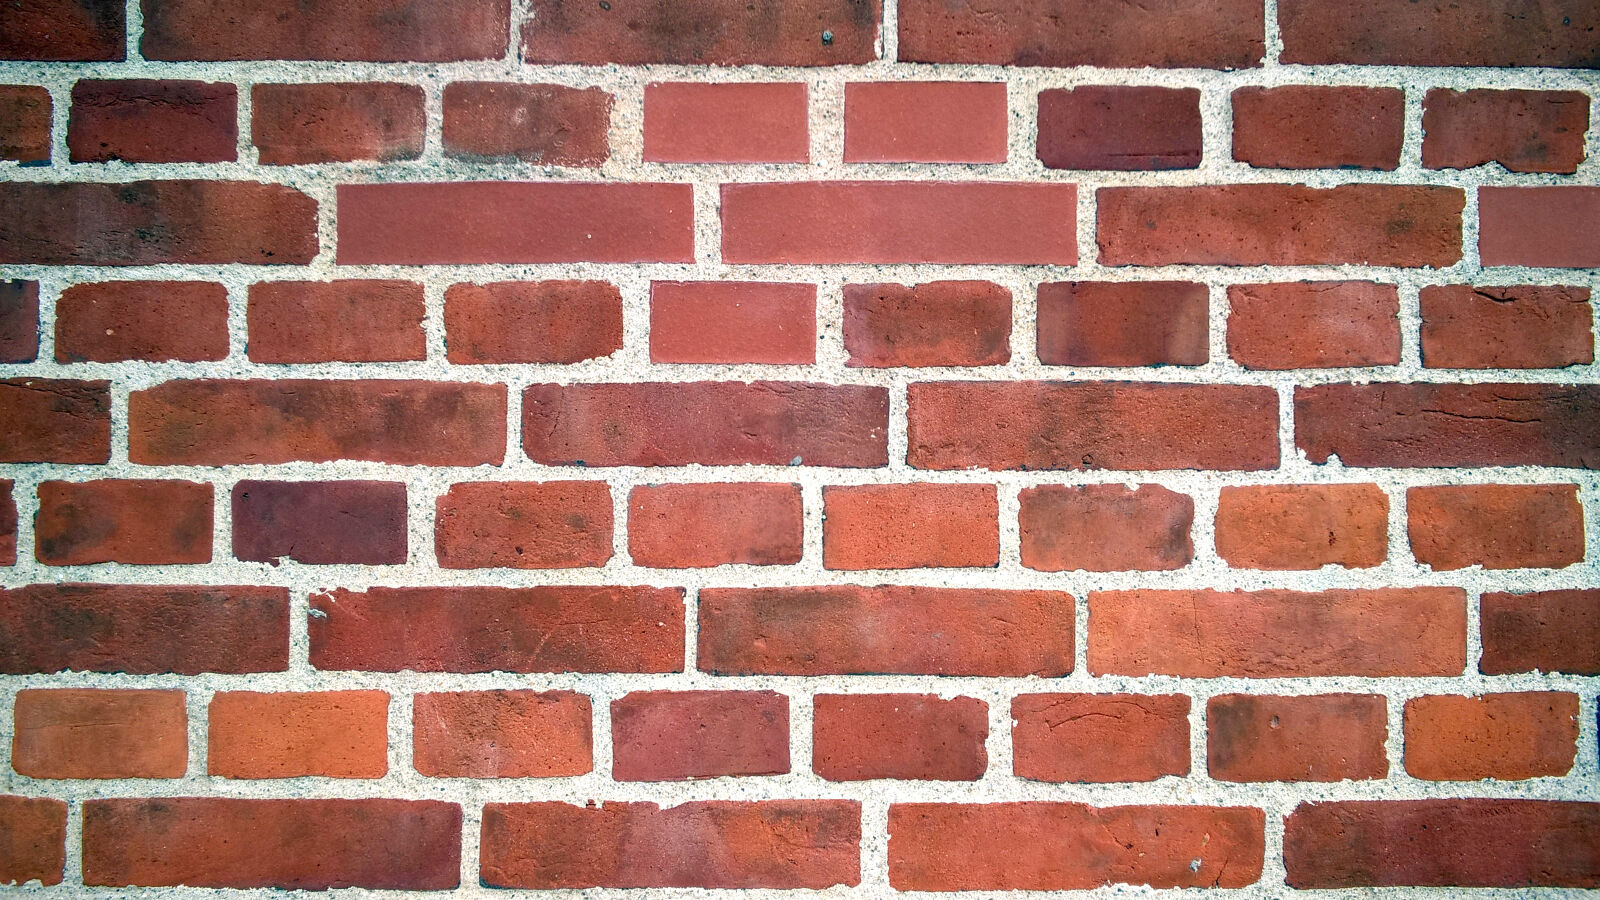 Nokia Lumia 830 sample photo. Brick, wall photography